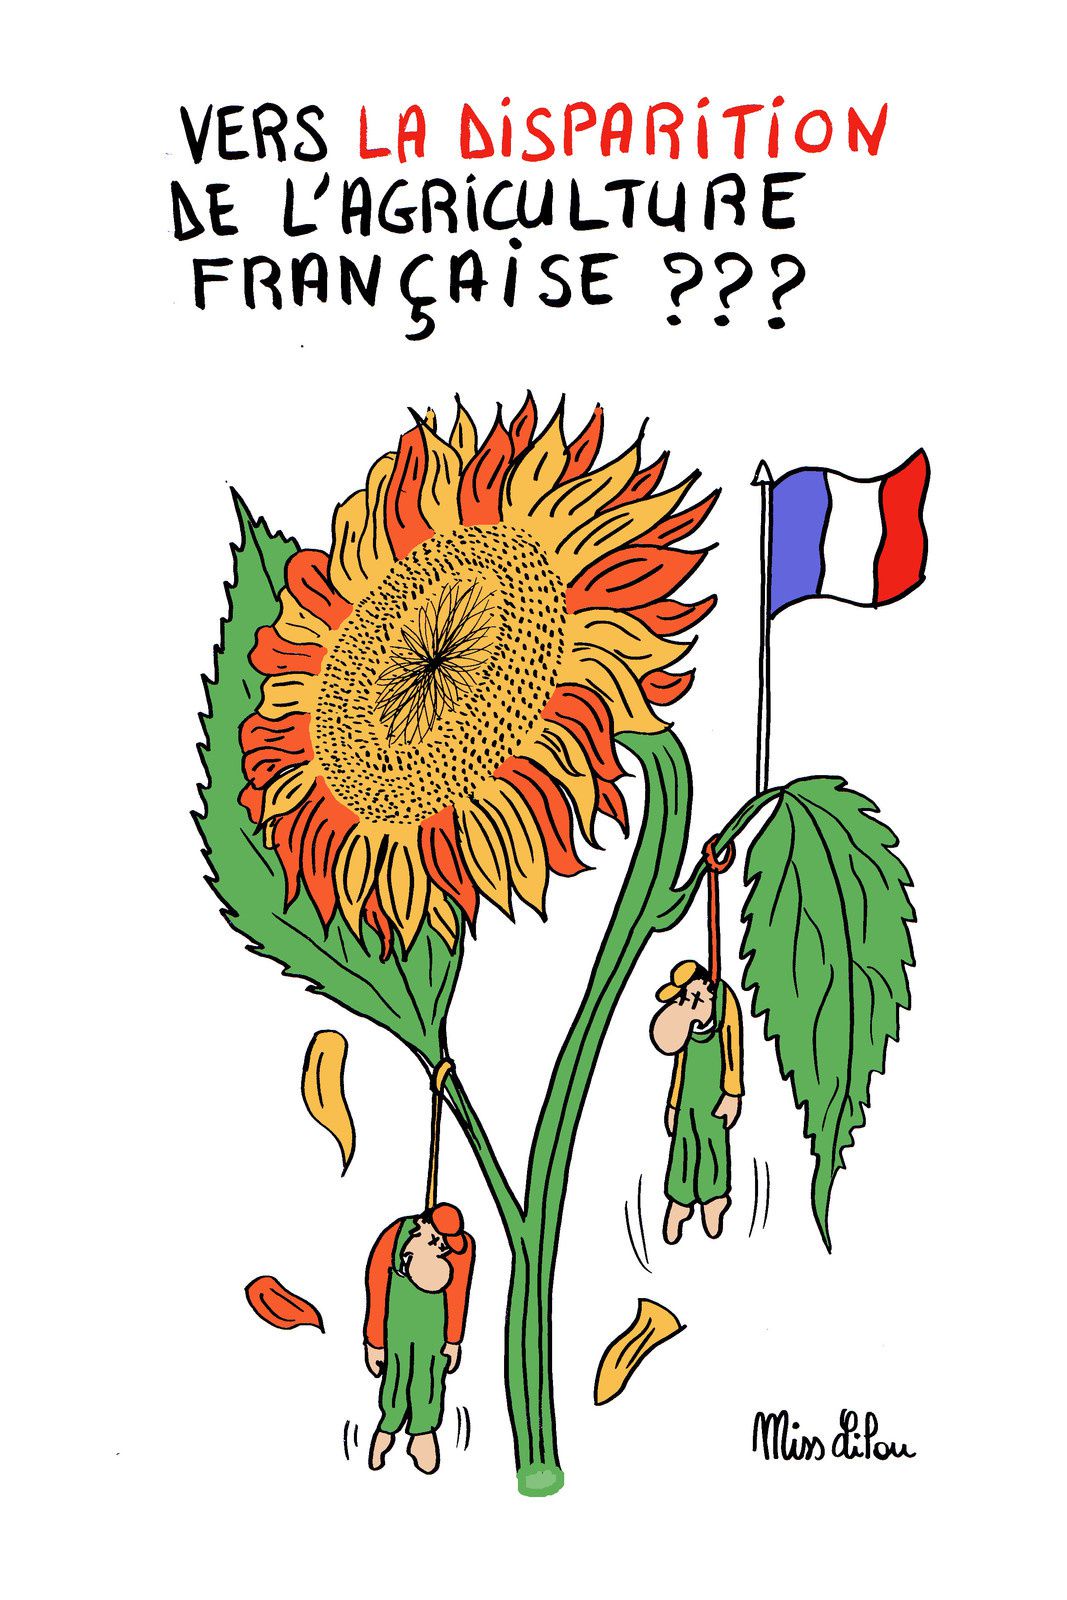 Vers la disparition de l'agriculture française ???